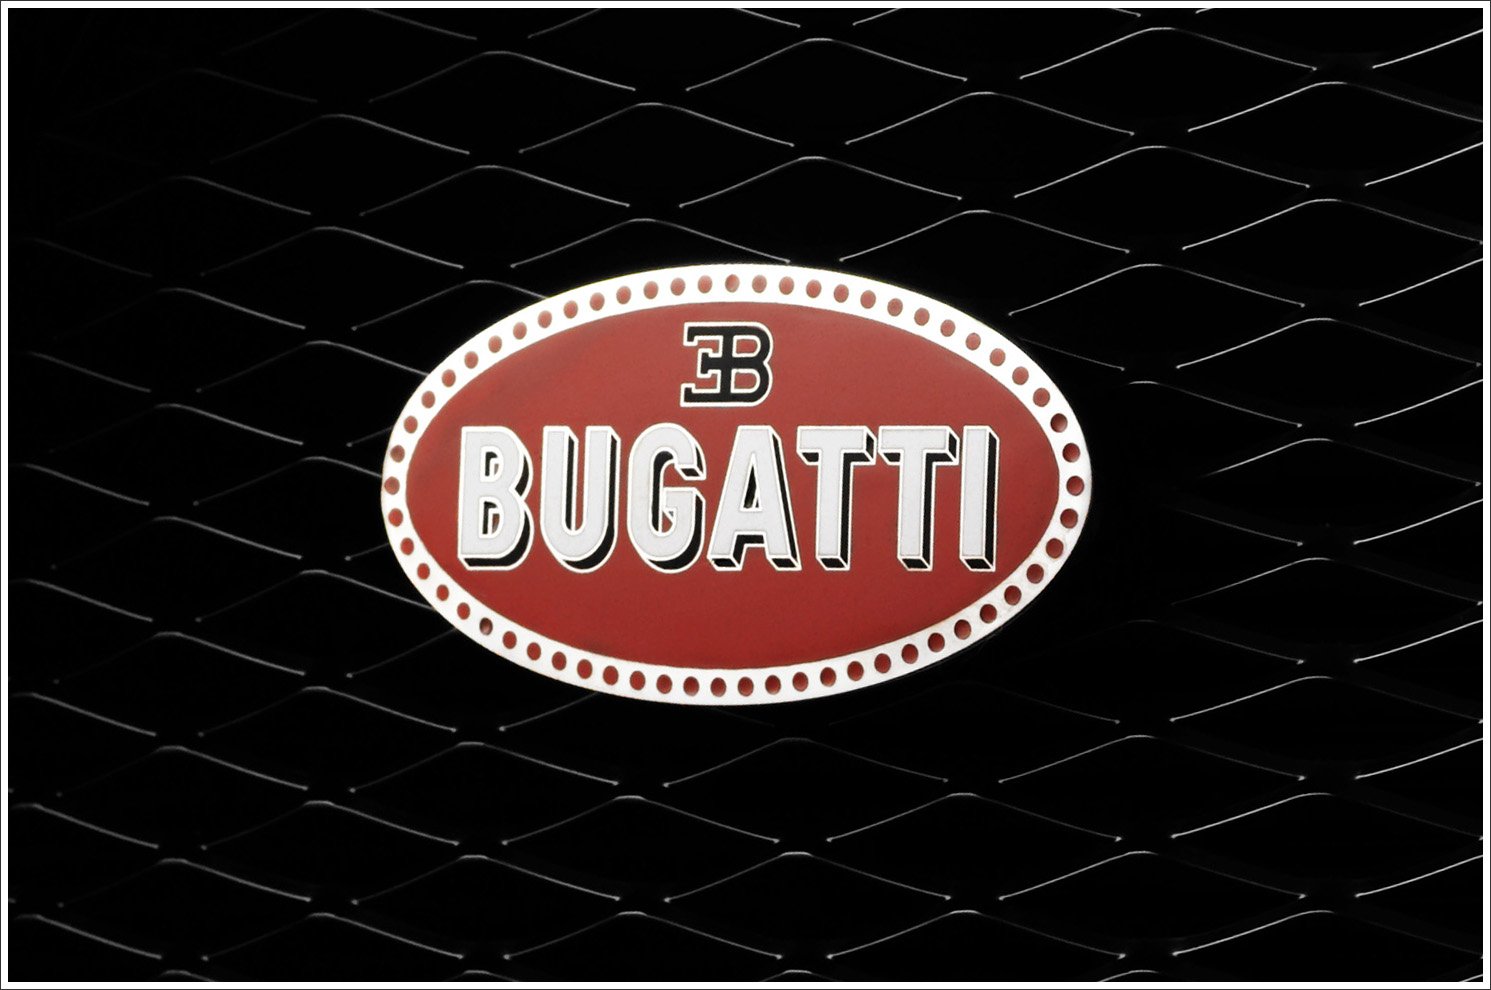 bugatti symbol